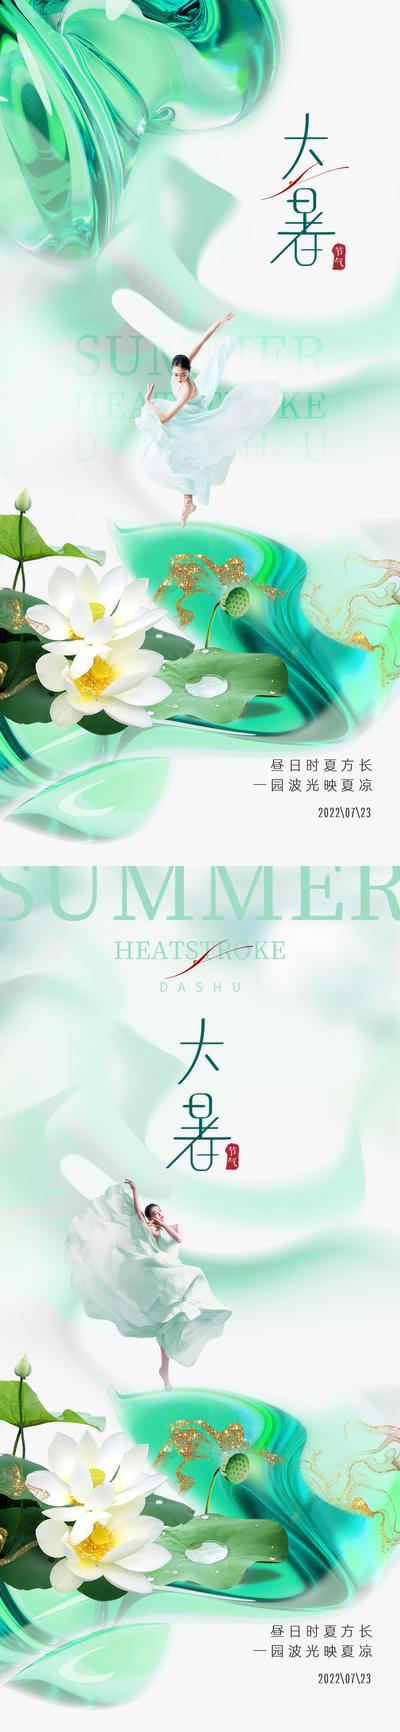 南门网 广告 海报 地产 大暑 医美 人物 荷花 竹叶 系列 小暑	